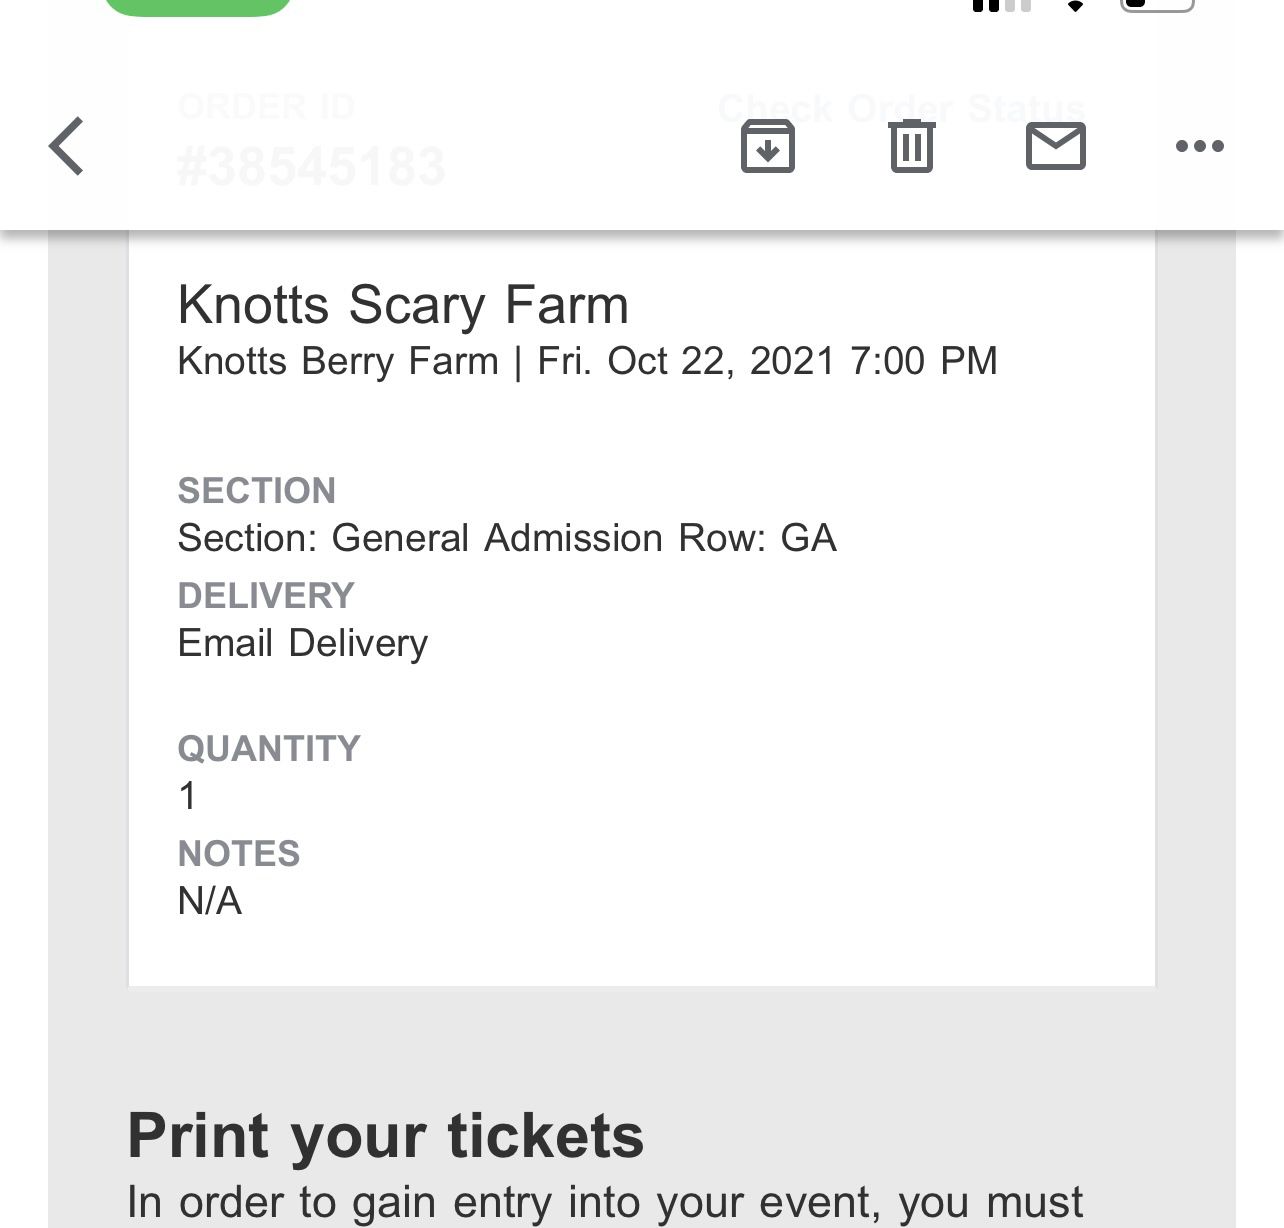 Knotts Scary Farm Ticket